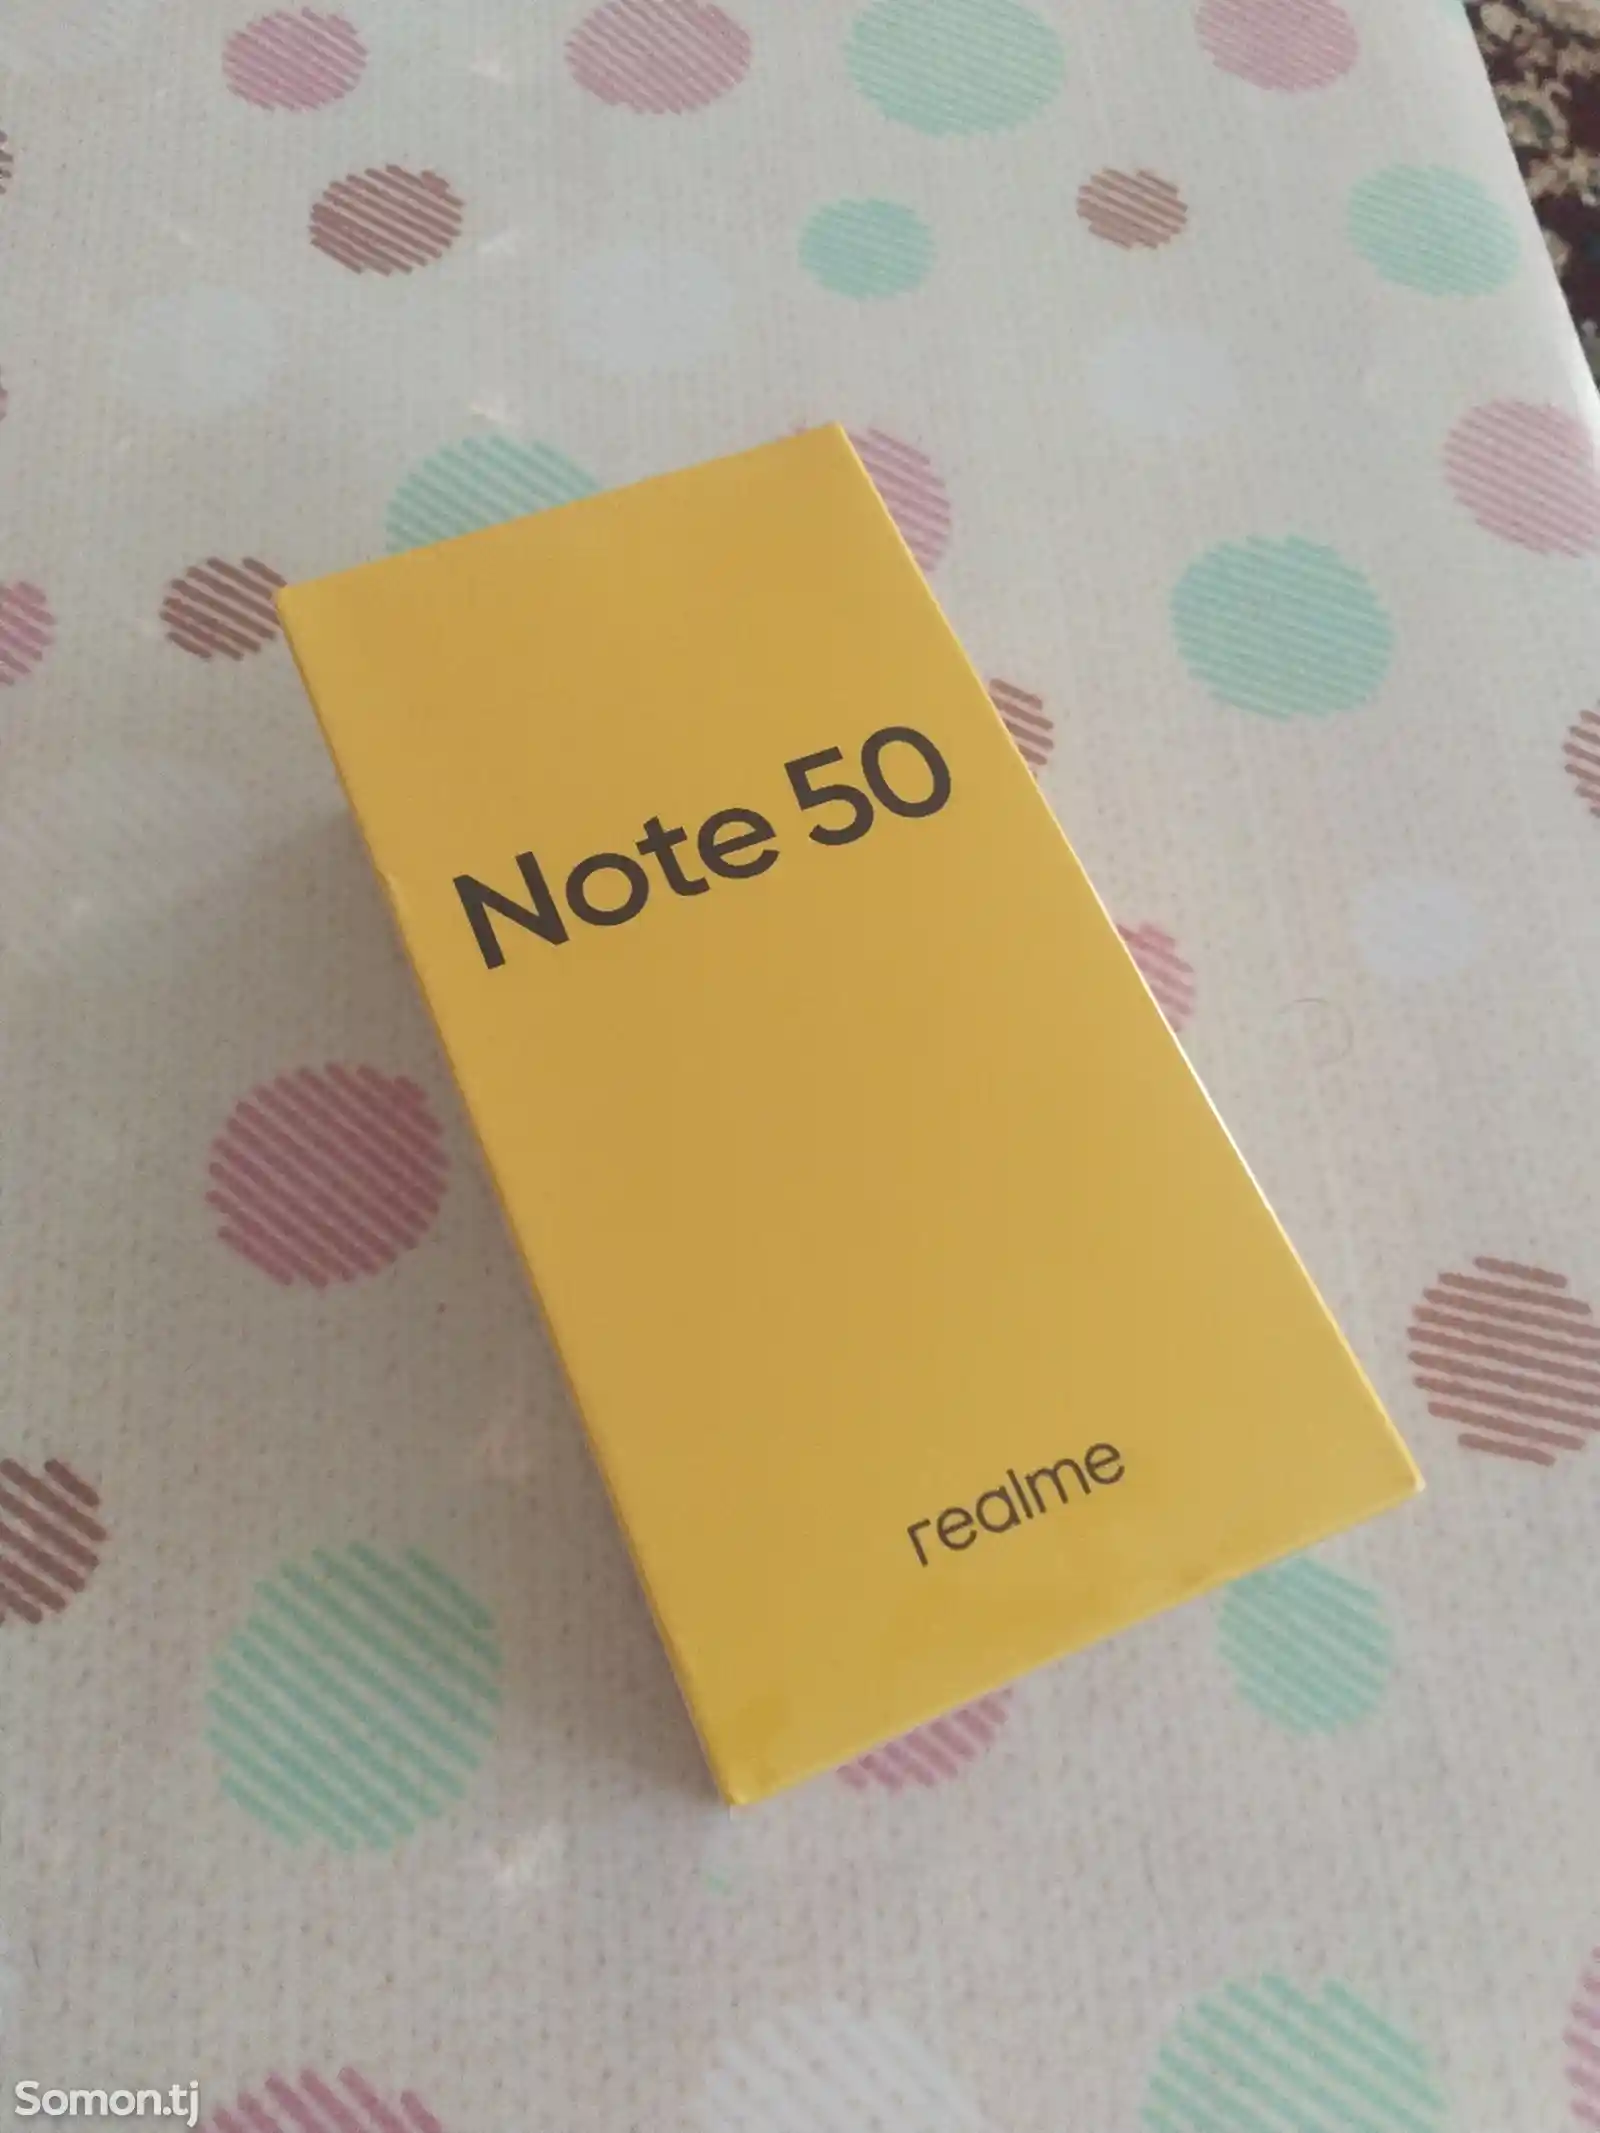 Realme note 50-1